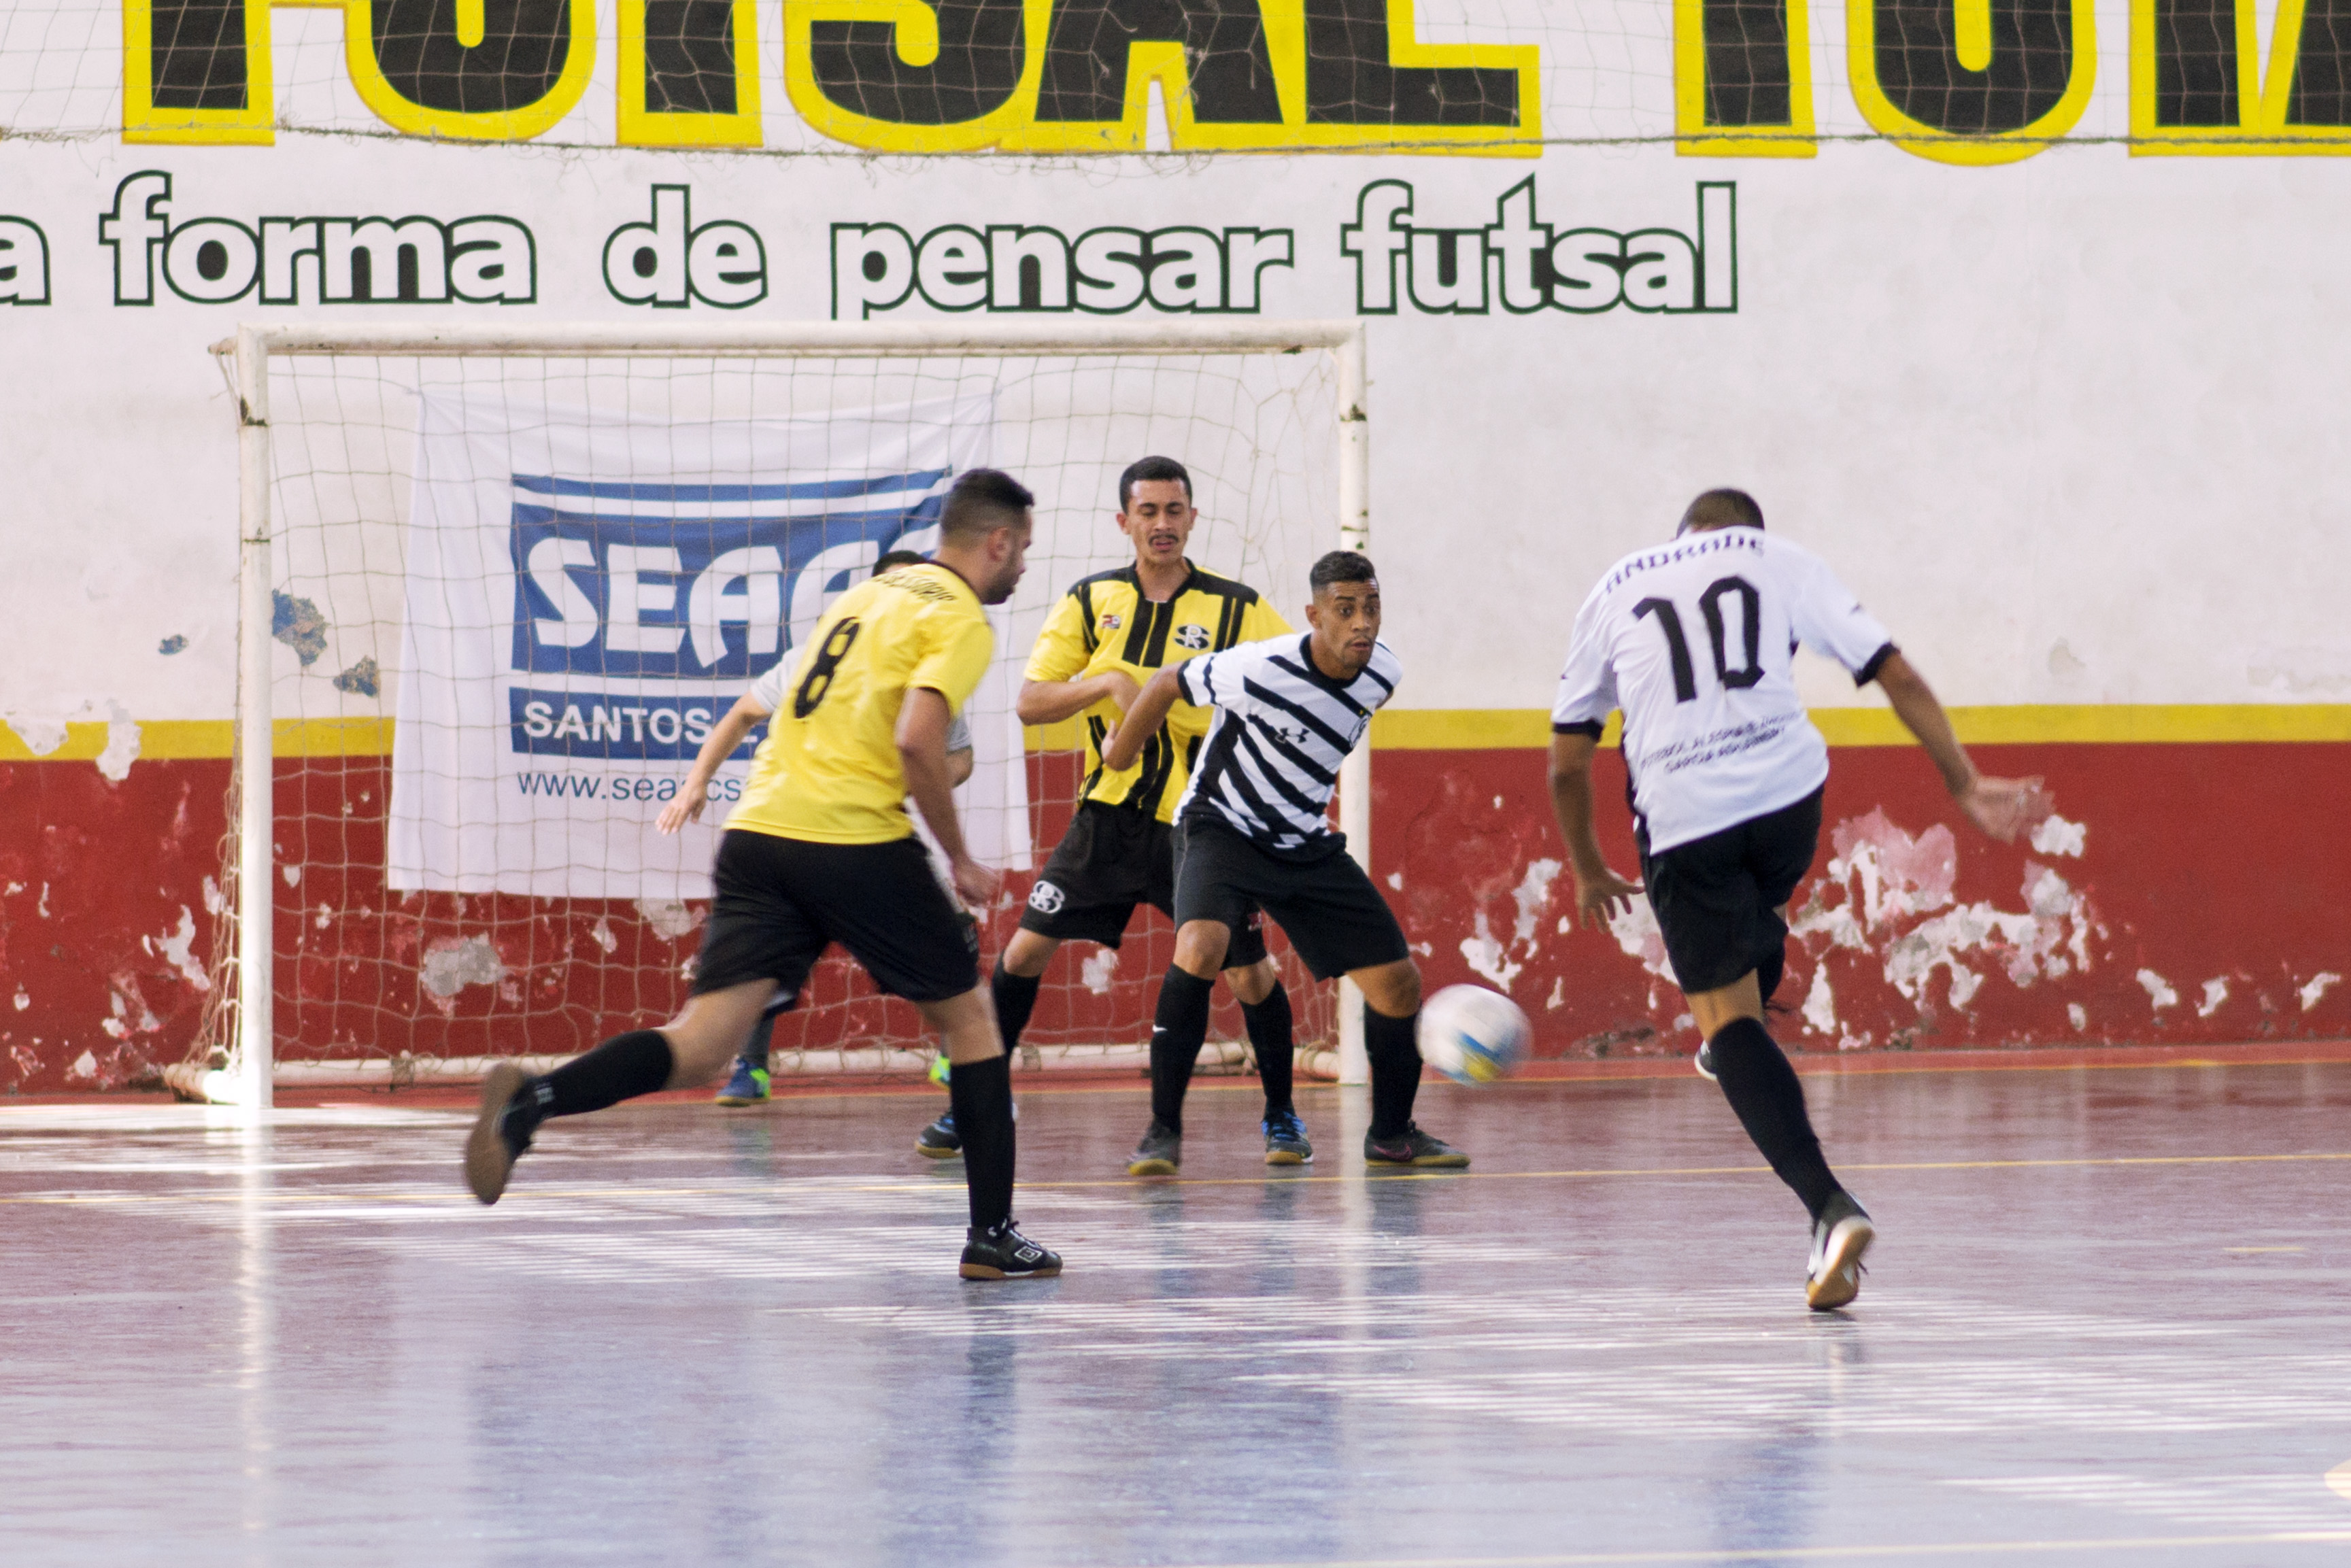 4ª Rodada - 6º Torneio Regional Futsal SEAAC Santos e Região